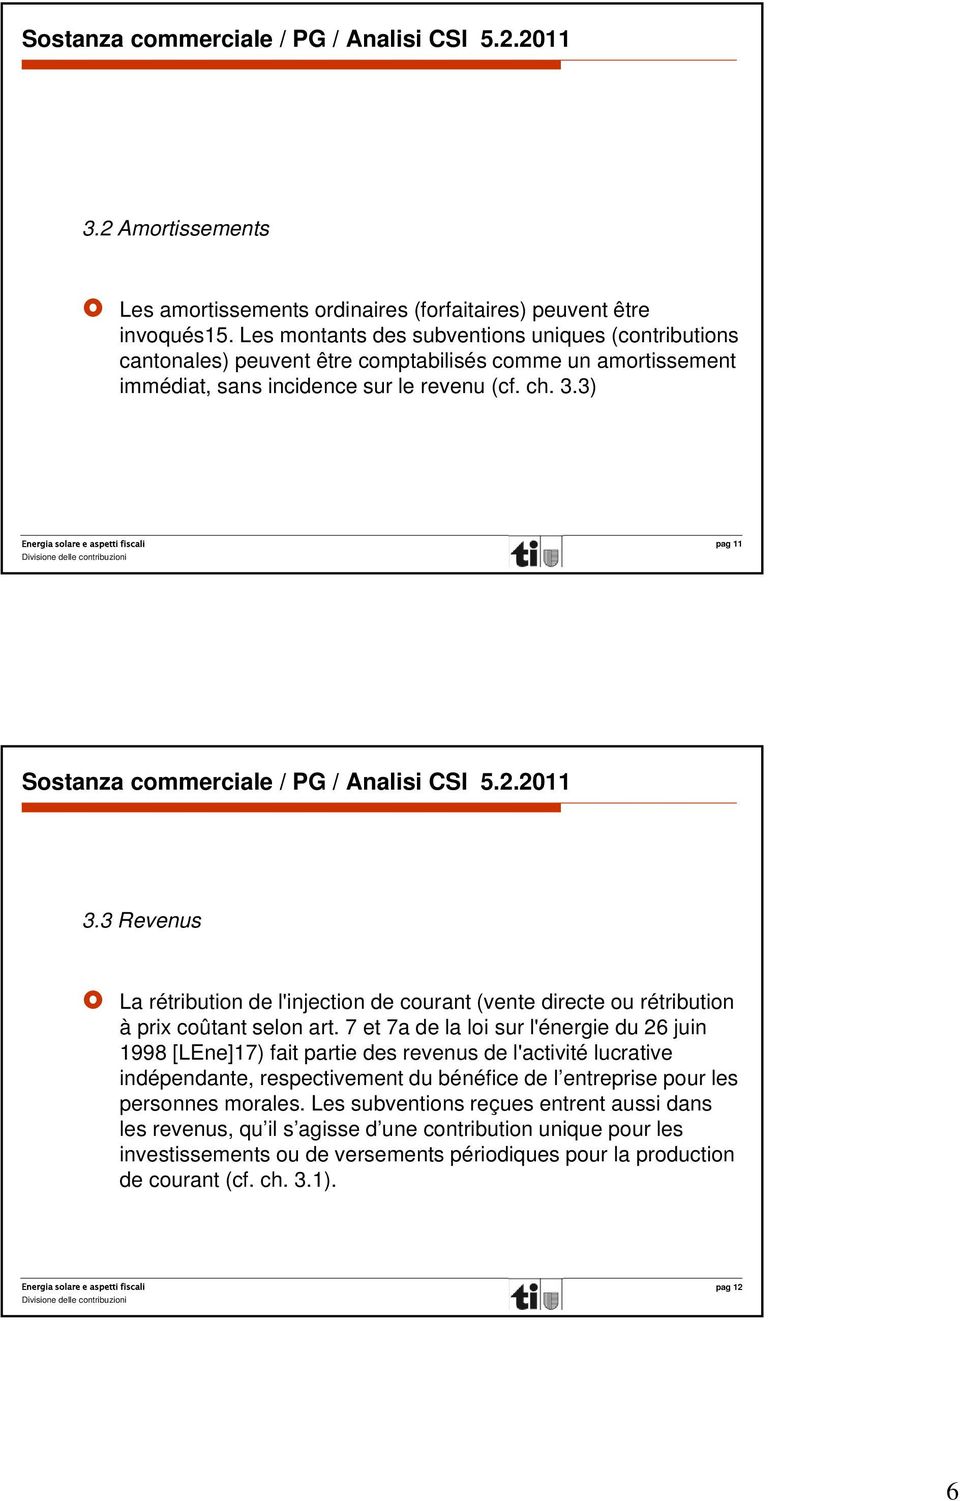 3) pag 11 Sostanza commerciale / PG / Analisi CSI 5.2.2011 3.3 Revenus La rétribution de l'injection de courant (vente directe ou rétribution à prix coûtant selon art.